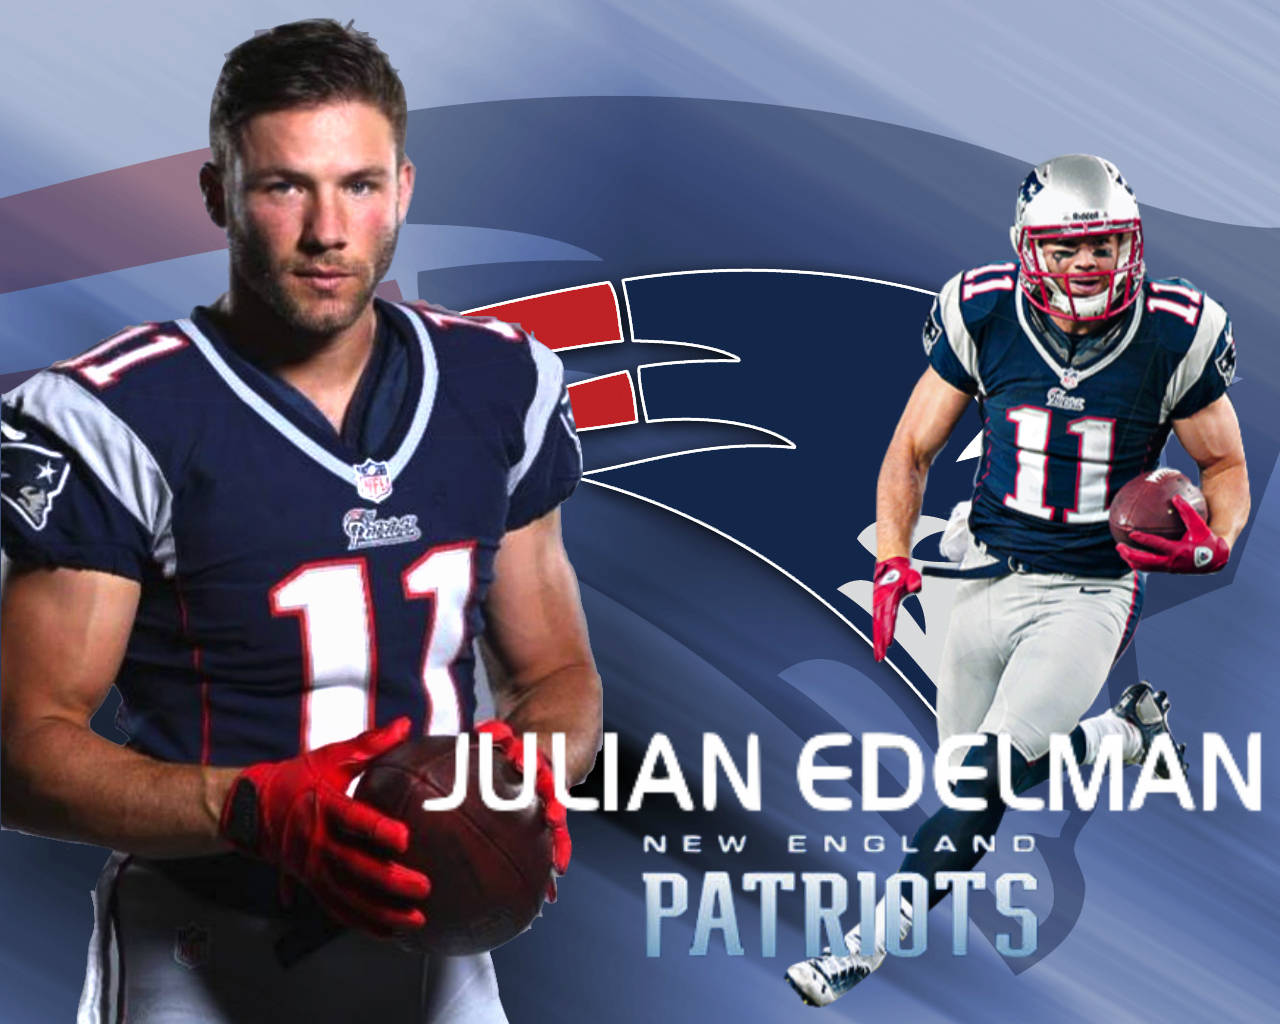 Julianedelman Und Ein Spieler Der New England Patriots Wallpaper